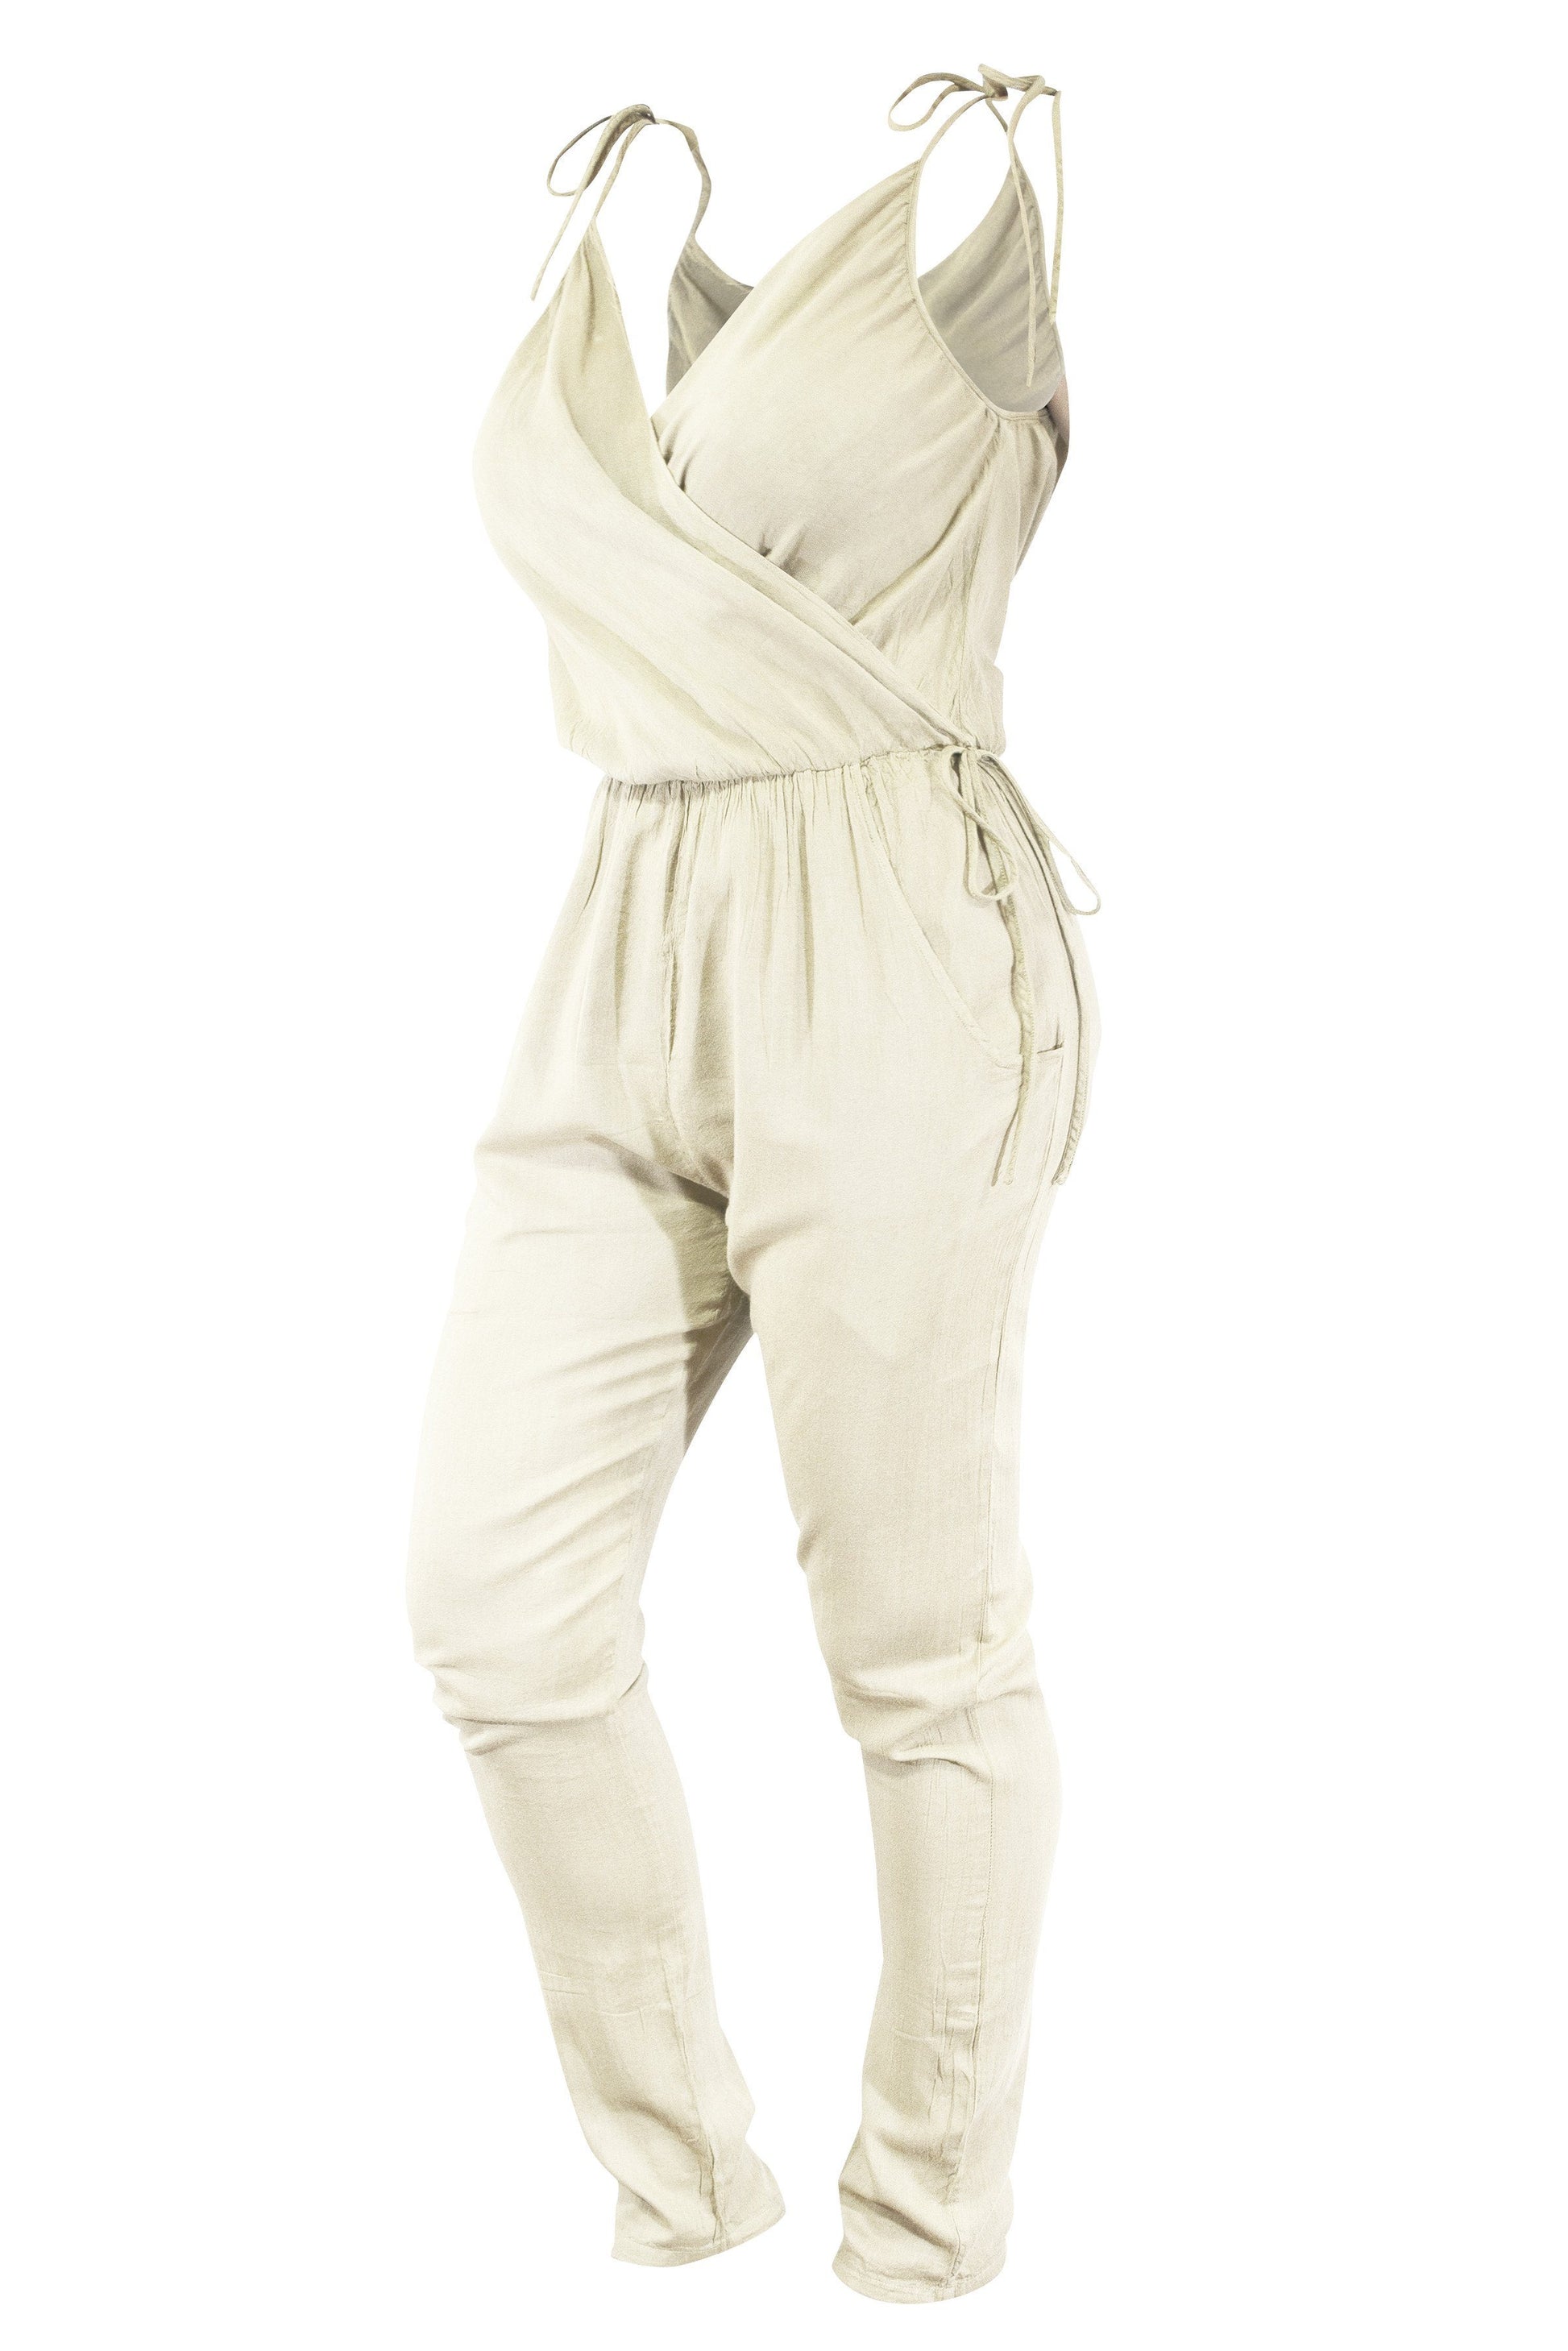 Cotton Jumpsuit Playsuit Strap Bow Tie Shoulder V Neck - CCCollections